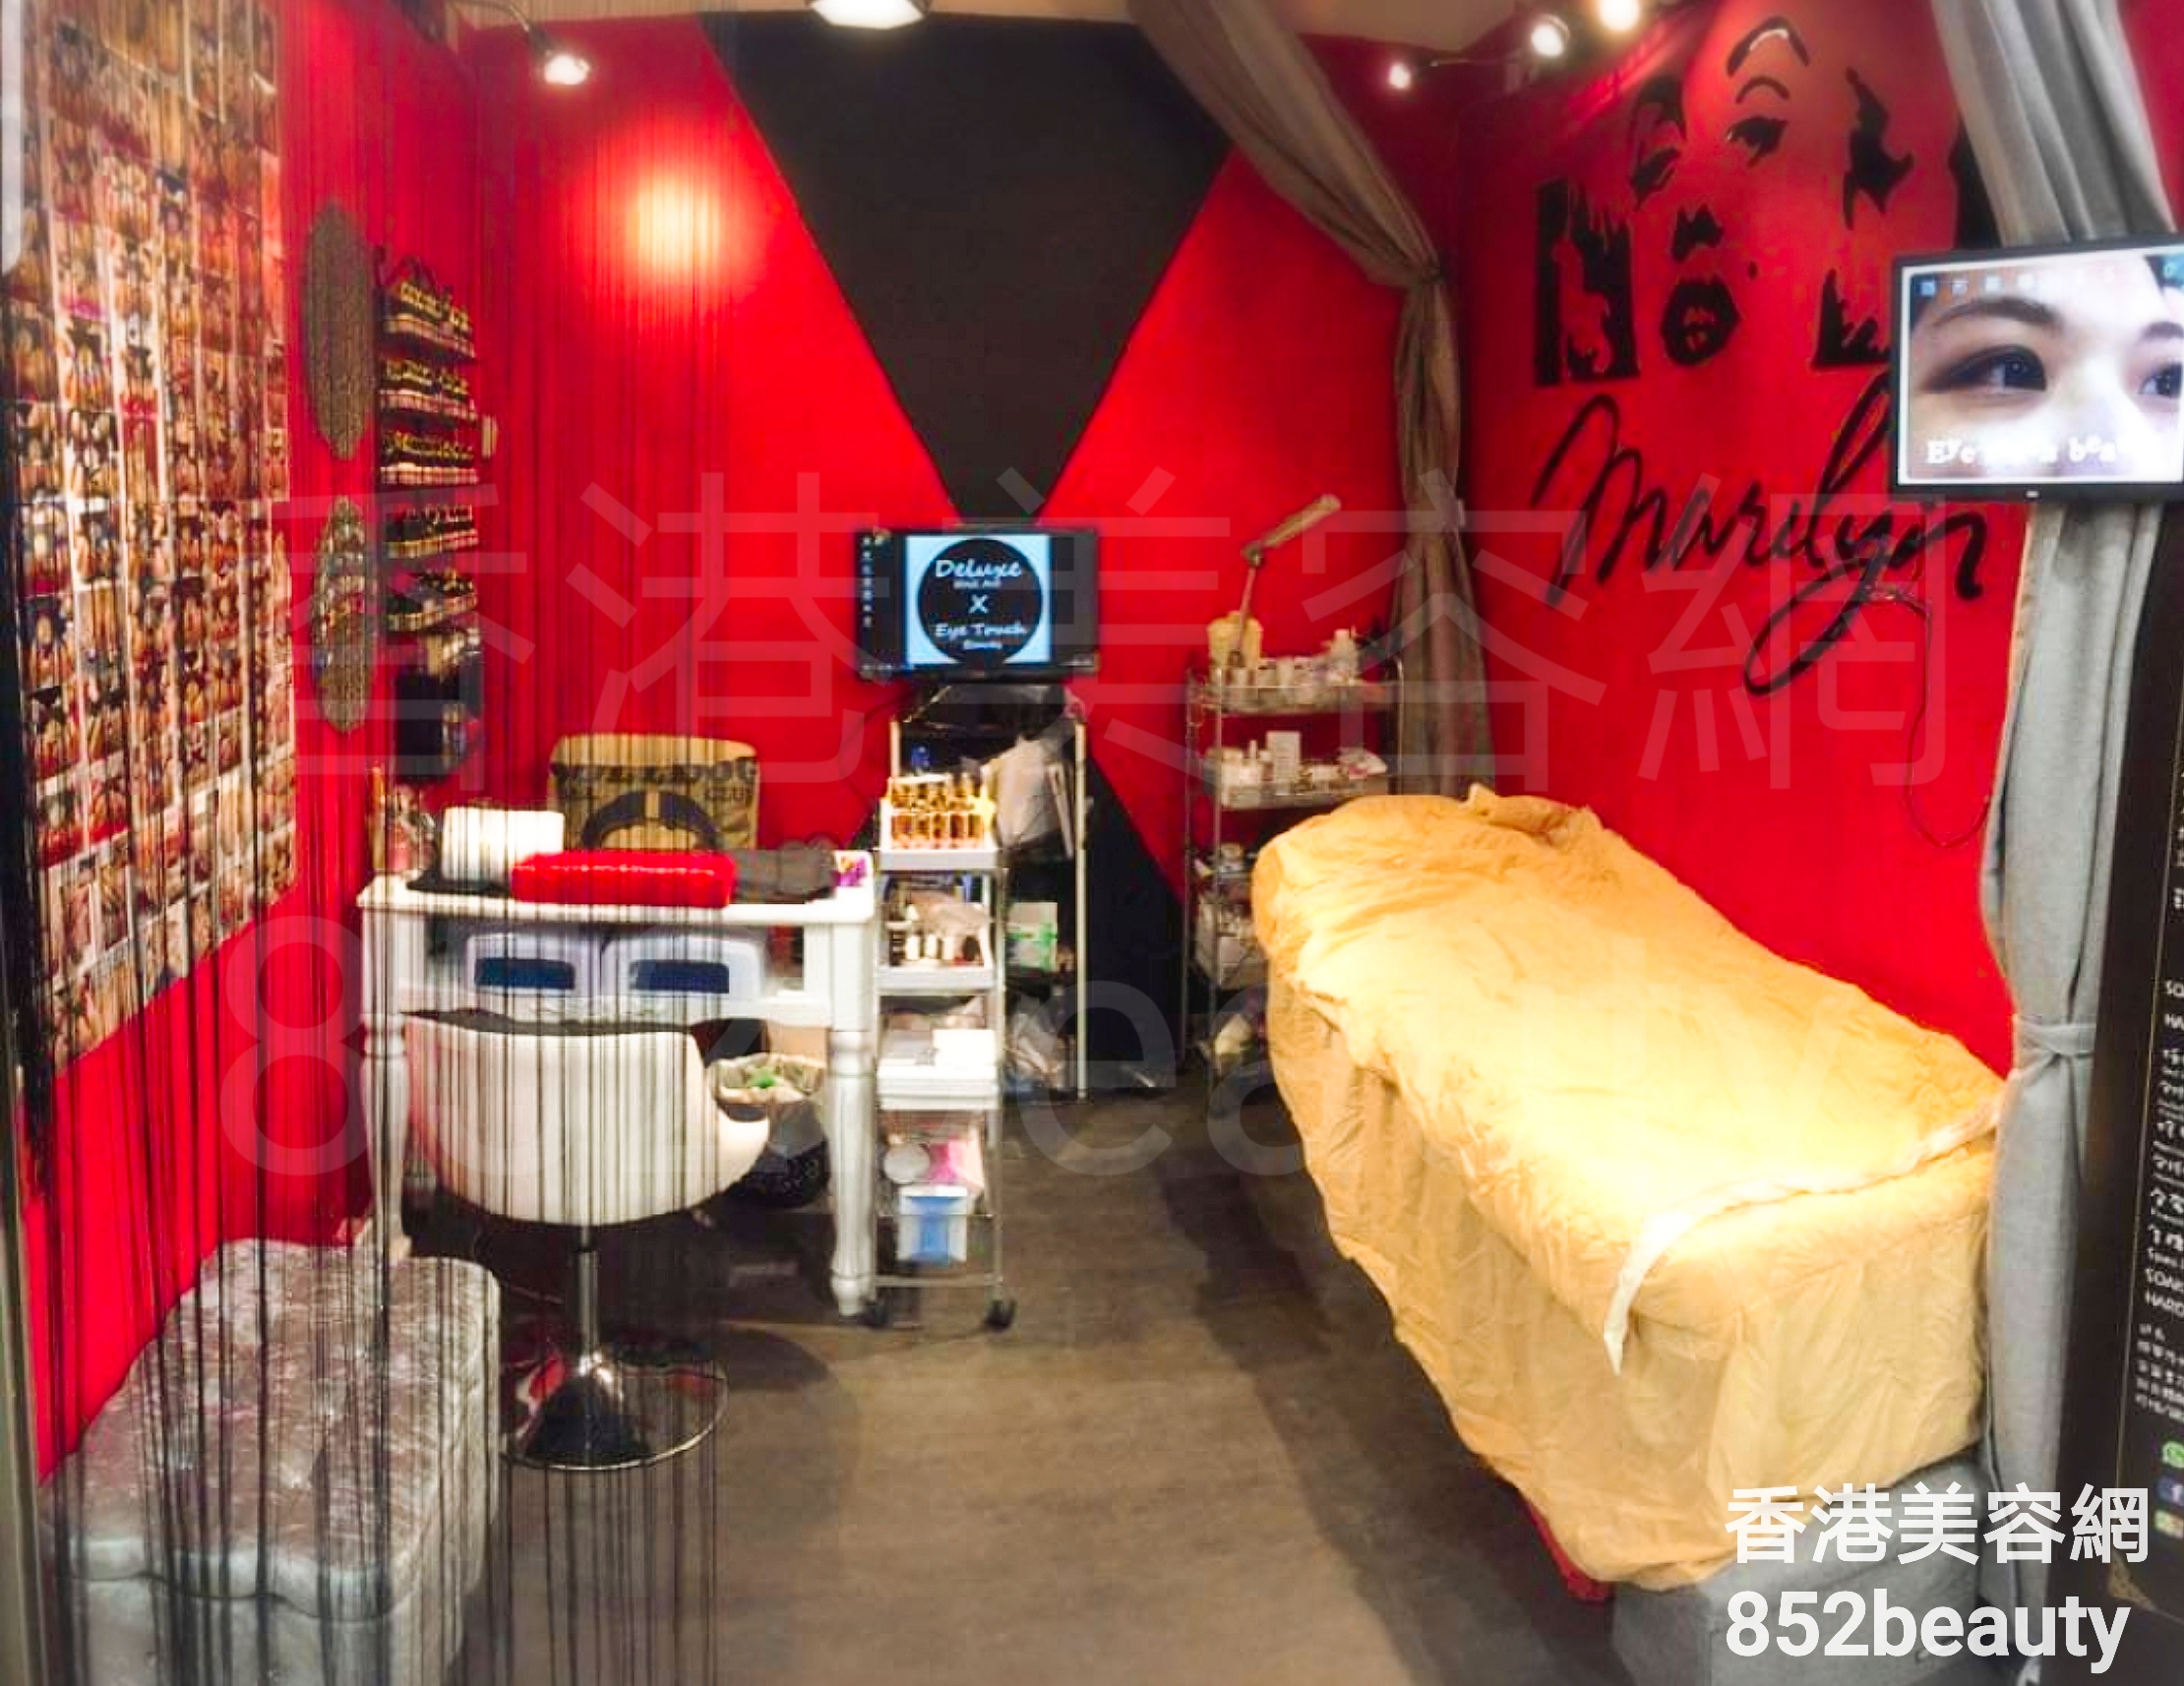 Hong Kong Beauty Salon Beauty Salon / Beautician: Deluxe Nail Art